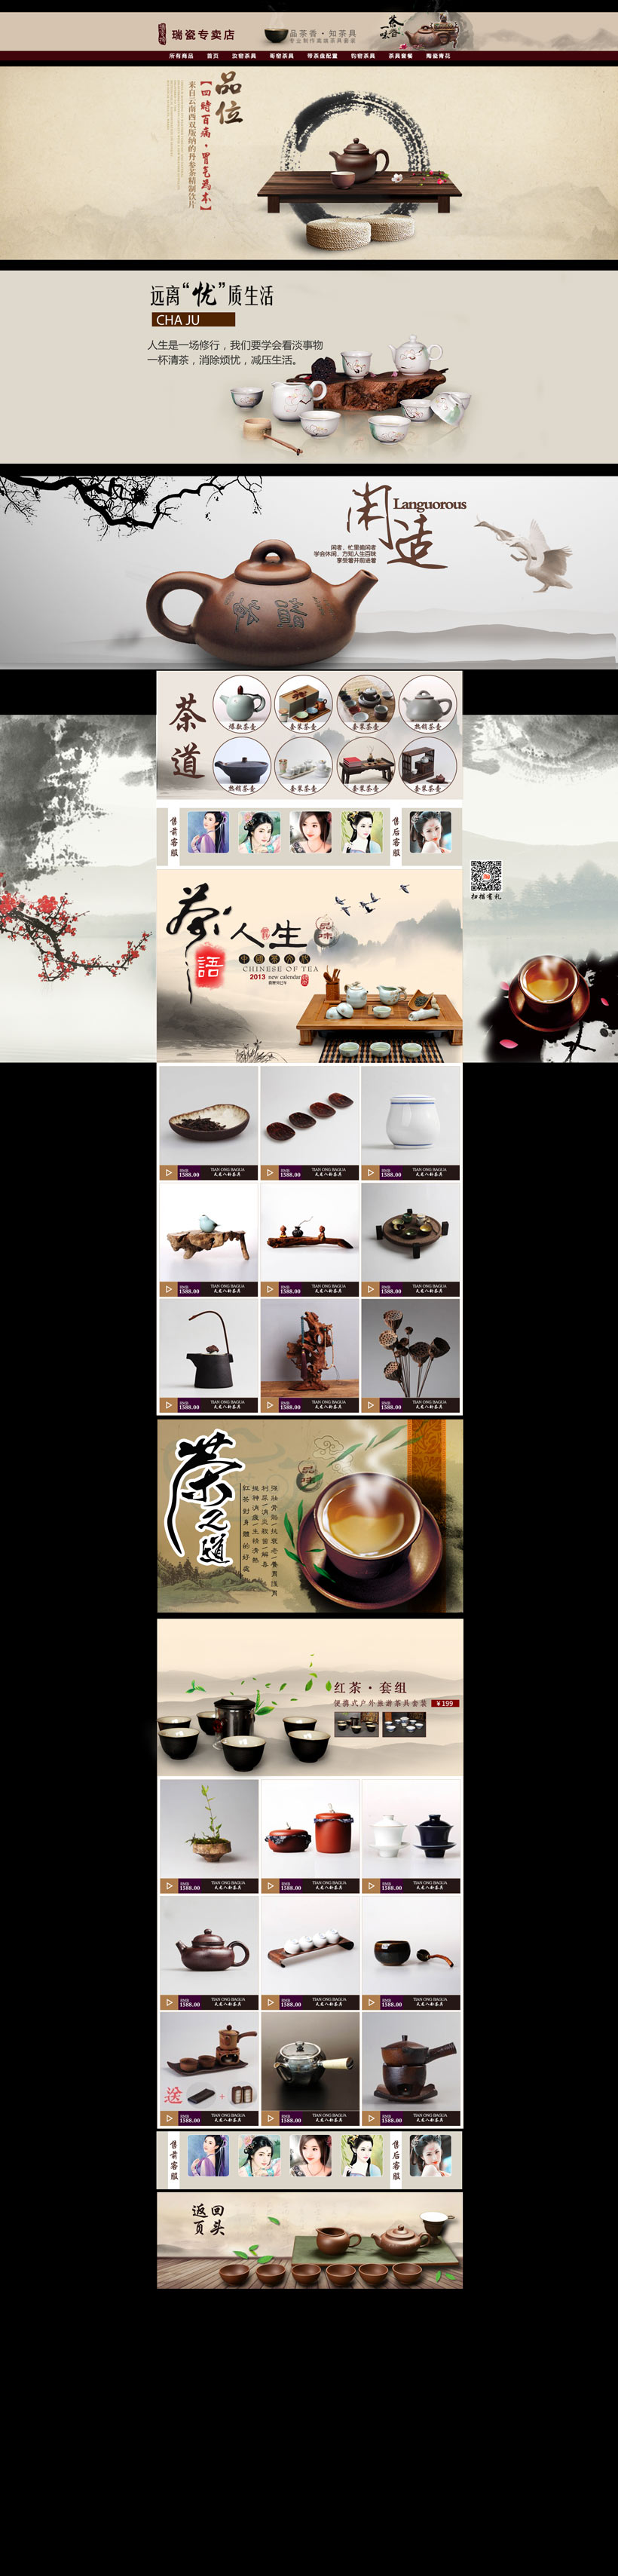 淘宝品质茶叶促销页面设计psd素材